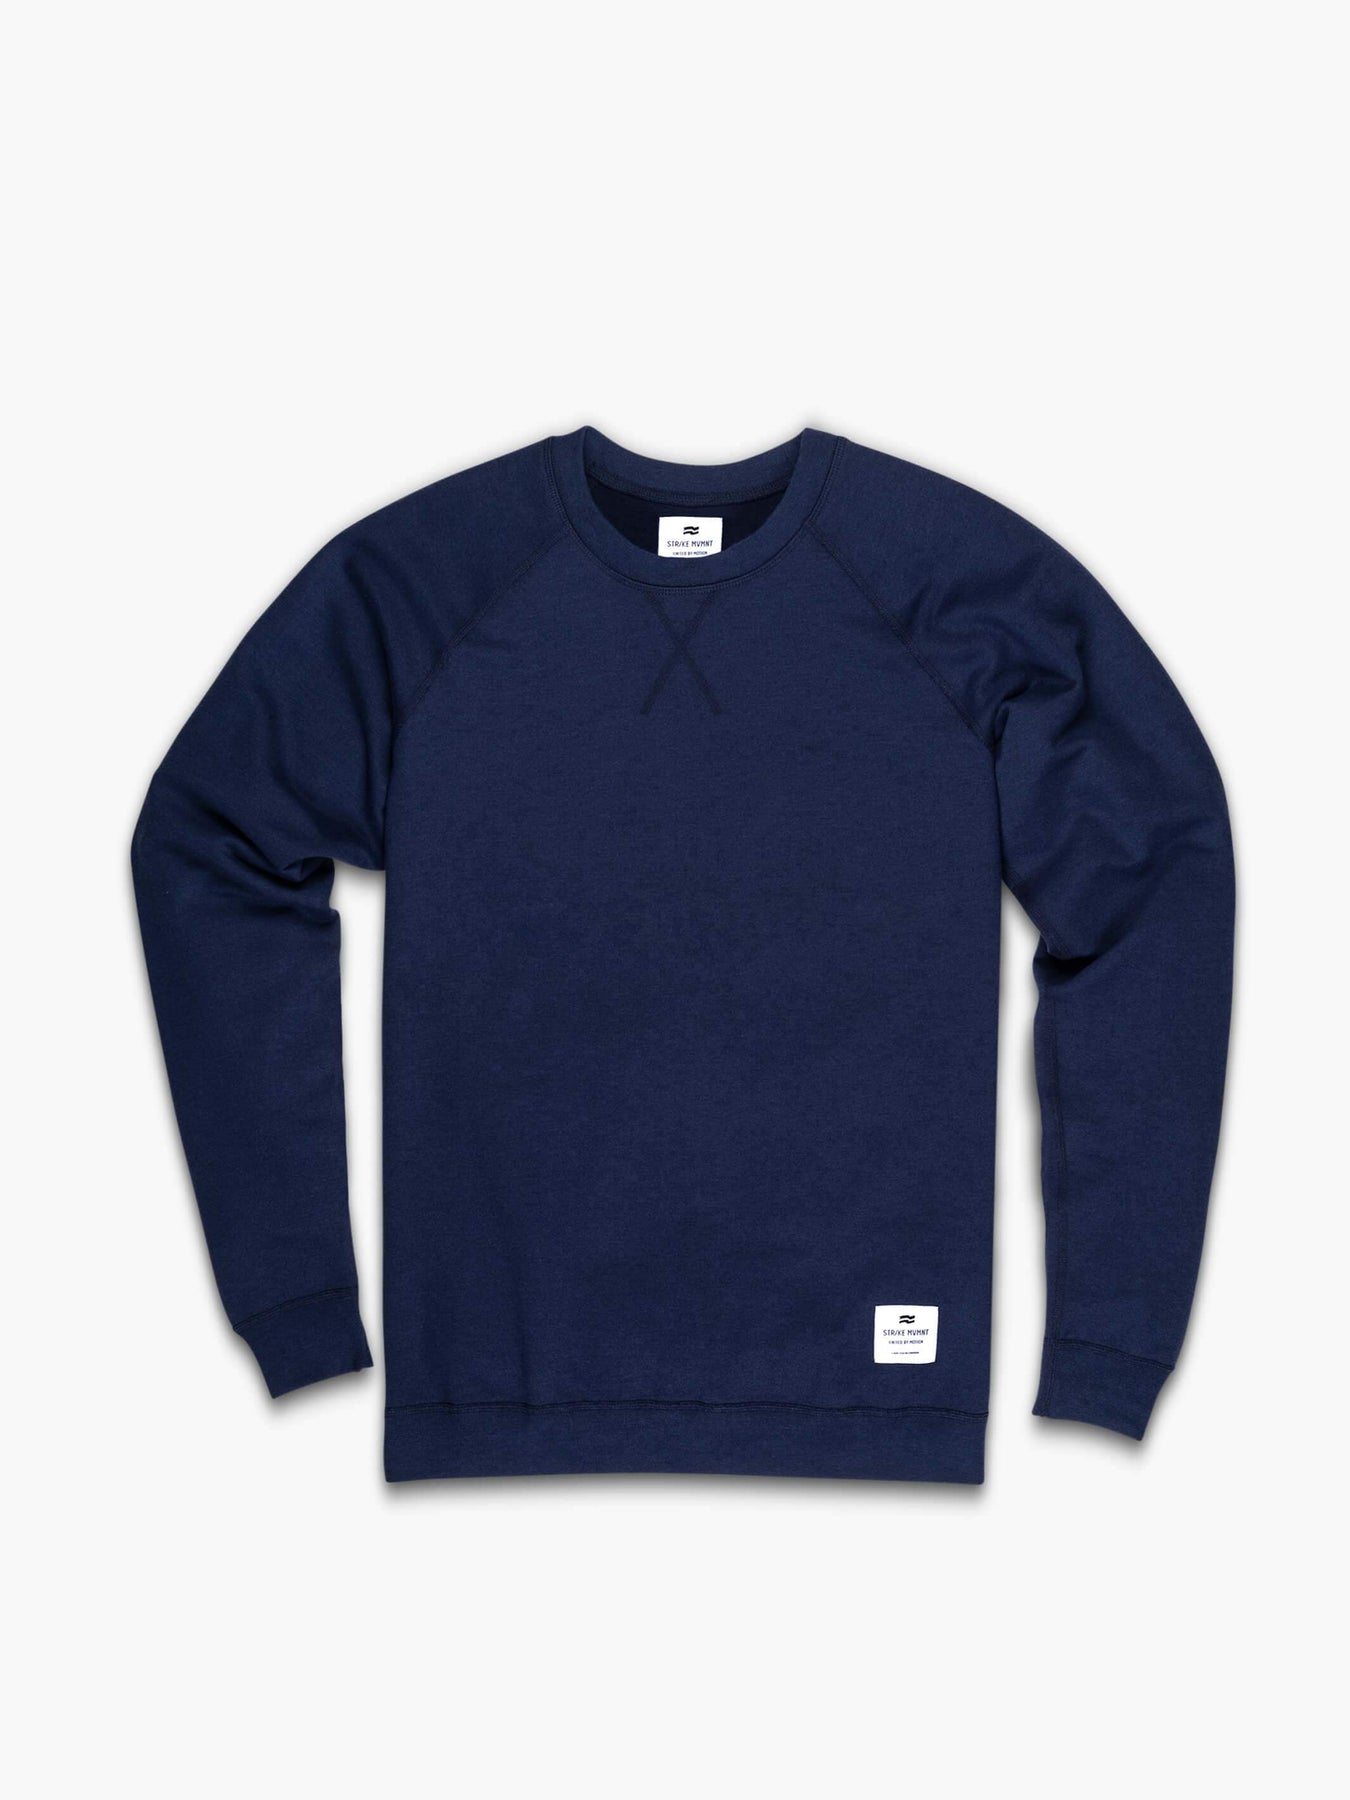 Buy Navy Regular Crew Sweatshirt XL